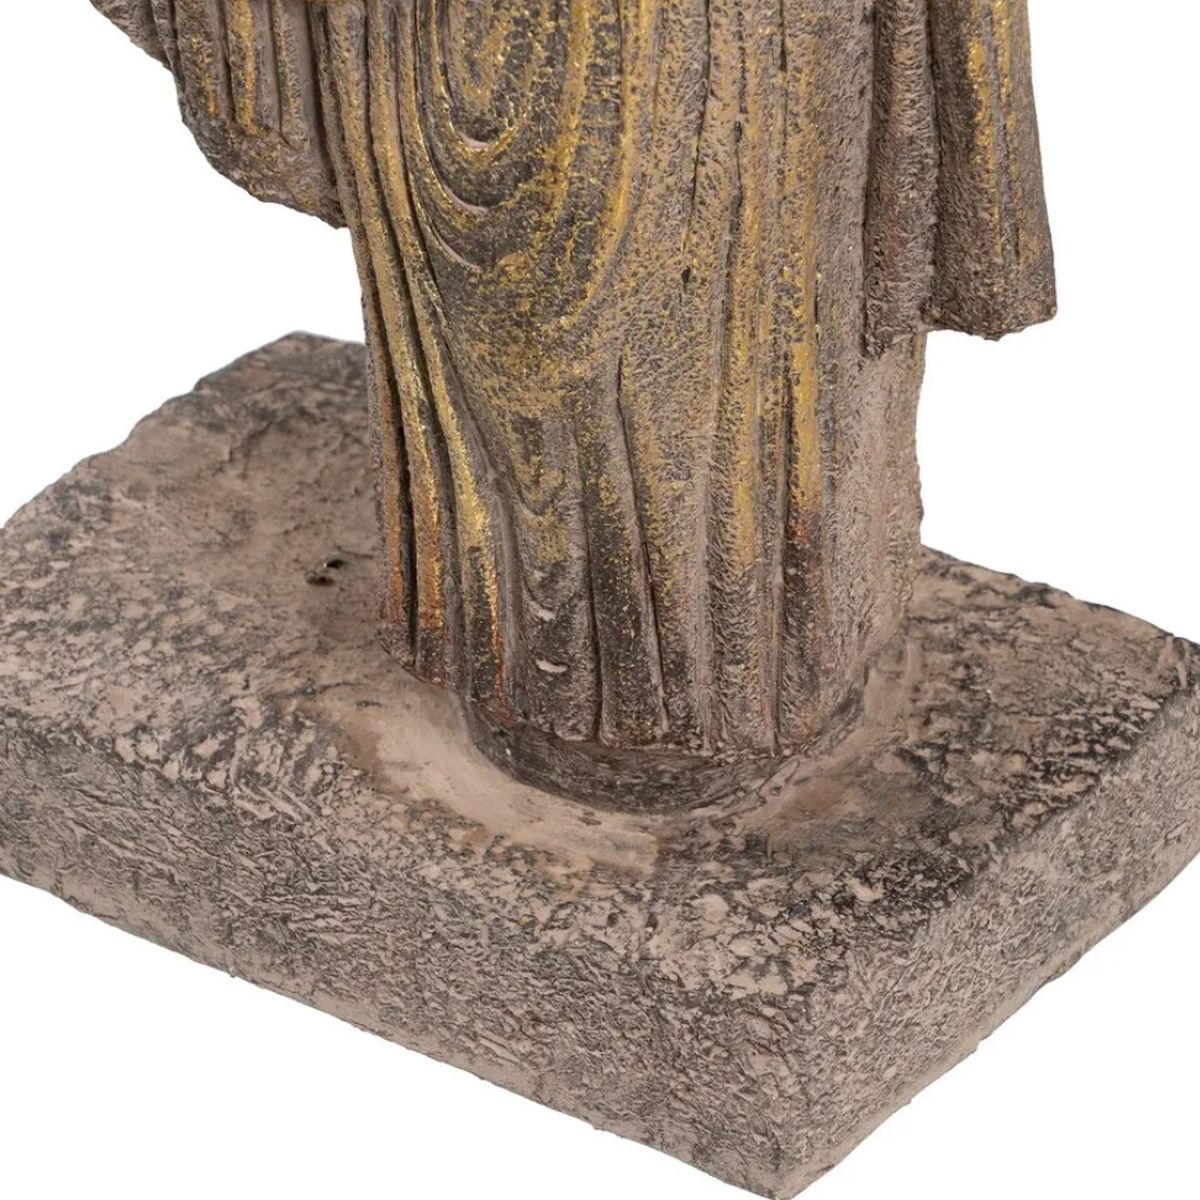 Statue Buste de Guerrier antique 76 cm